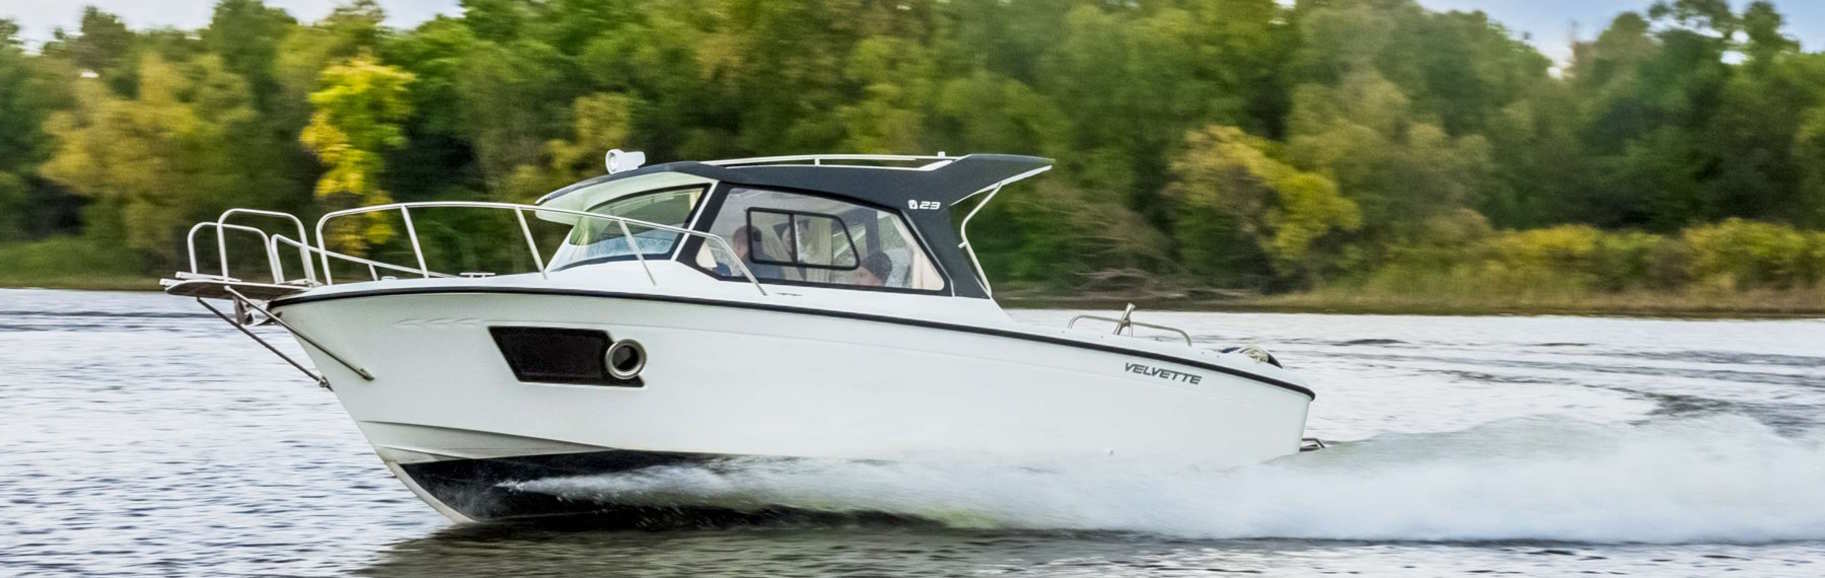 Моторная лодка с каютой: модели, особенности, советы